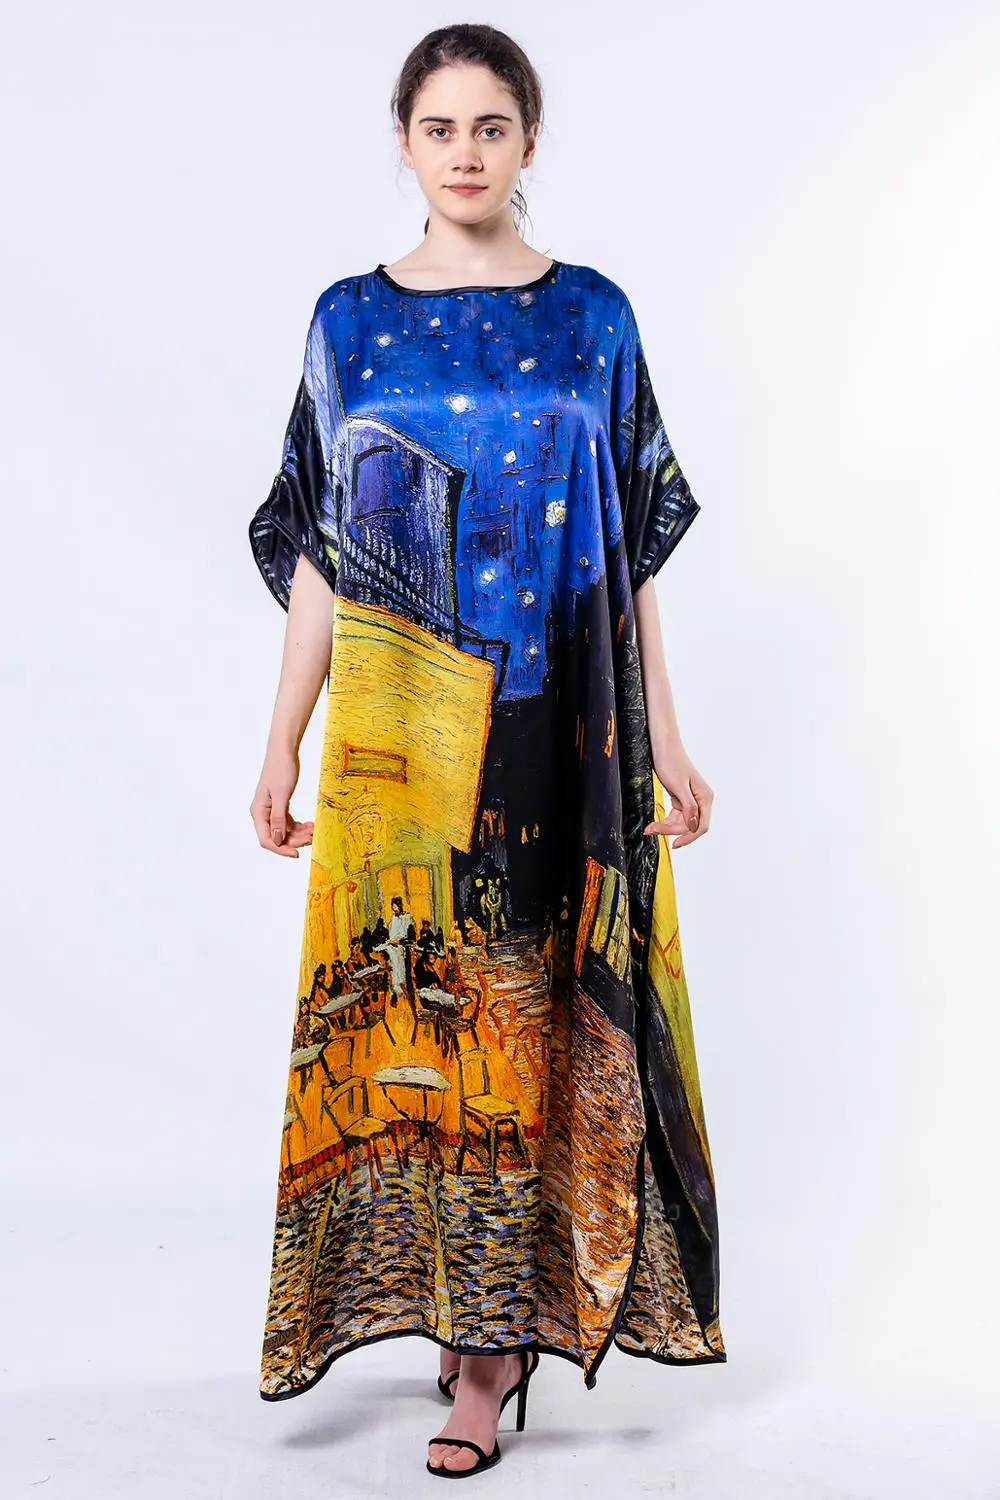 Шелковое платье из фетра с изображением кочевников Ван Гога кафе террасы |